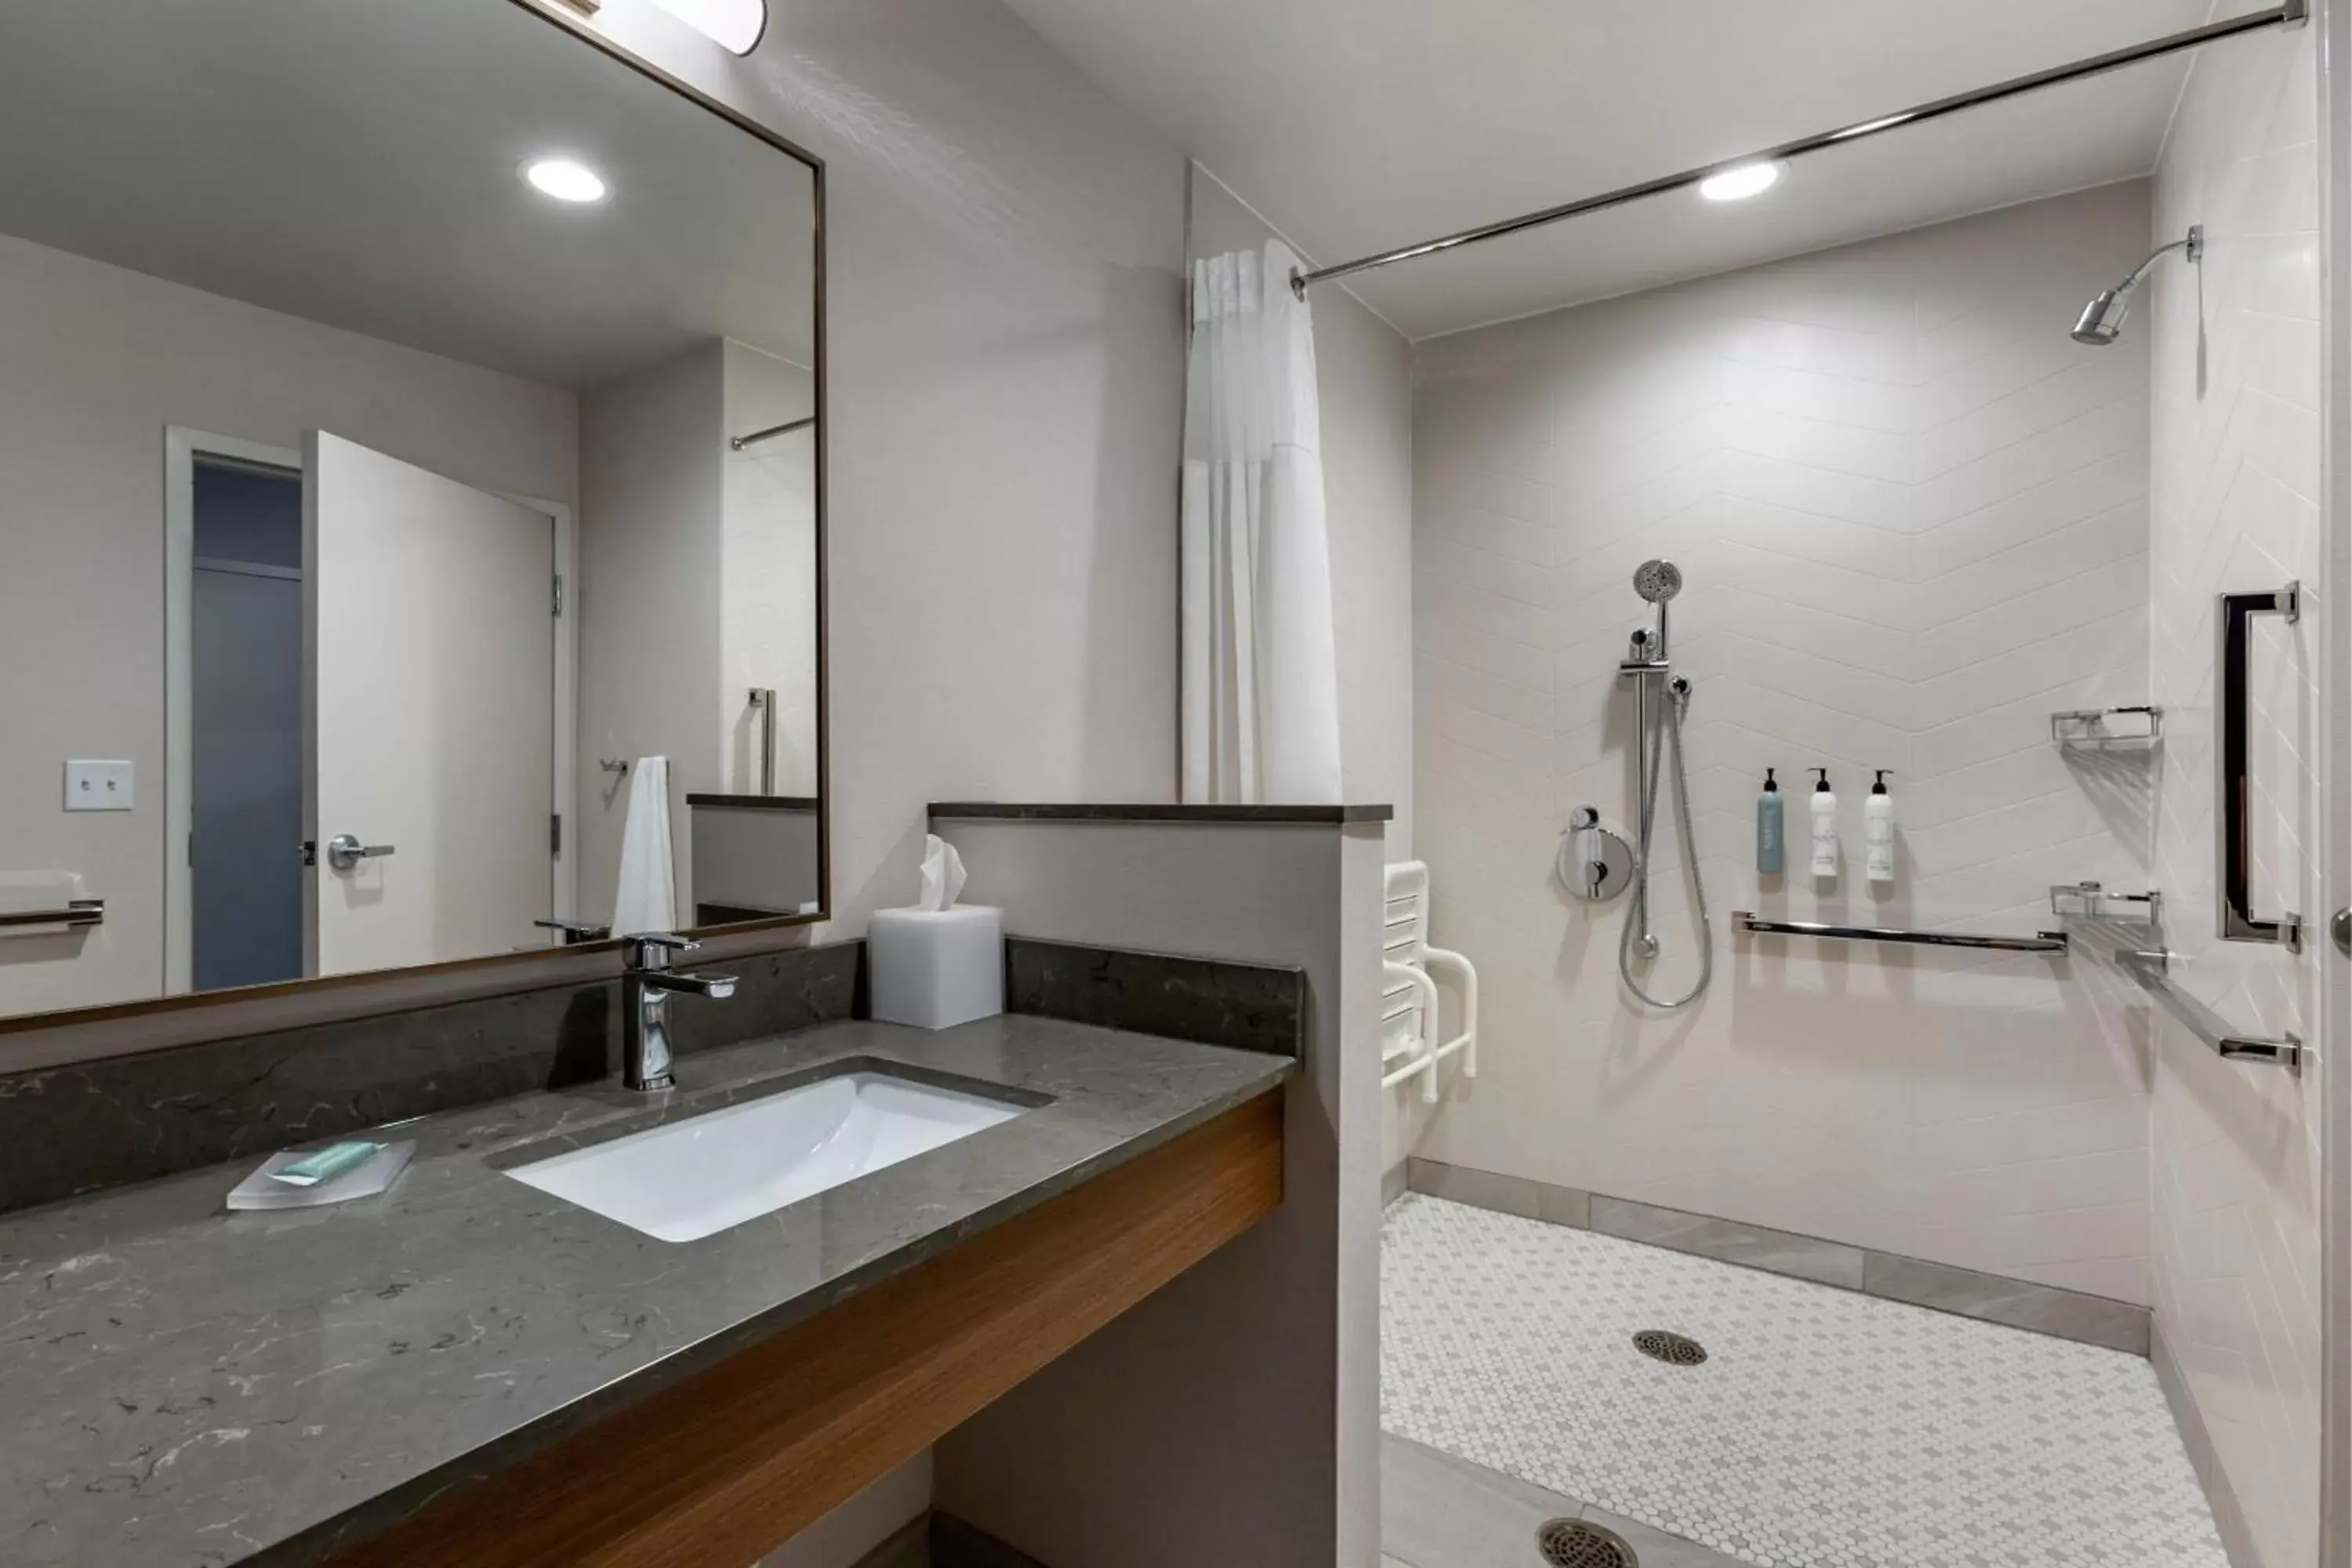 Photo of the whole room, Bathroom in Fairfield by Marriott Inn & Suites Sandusky